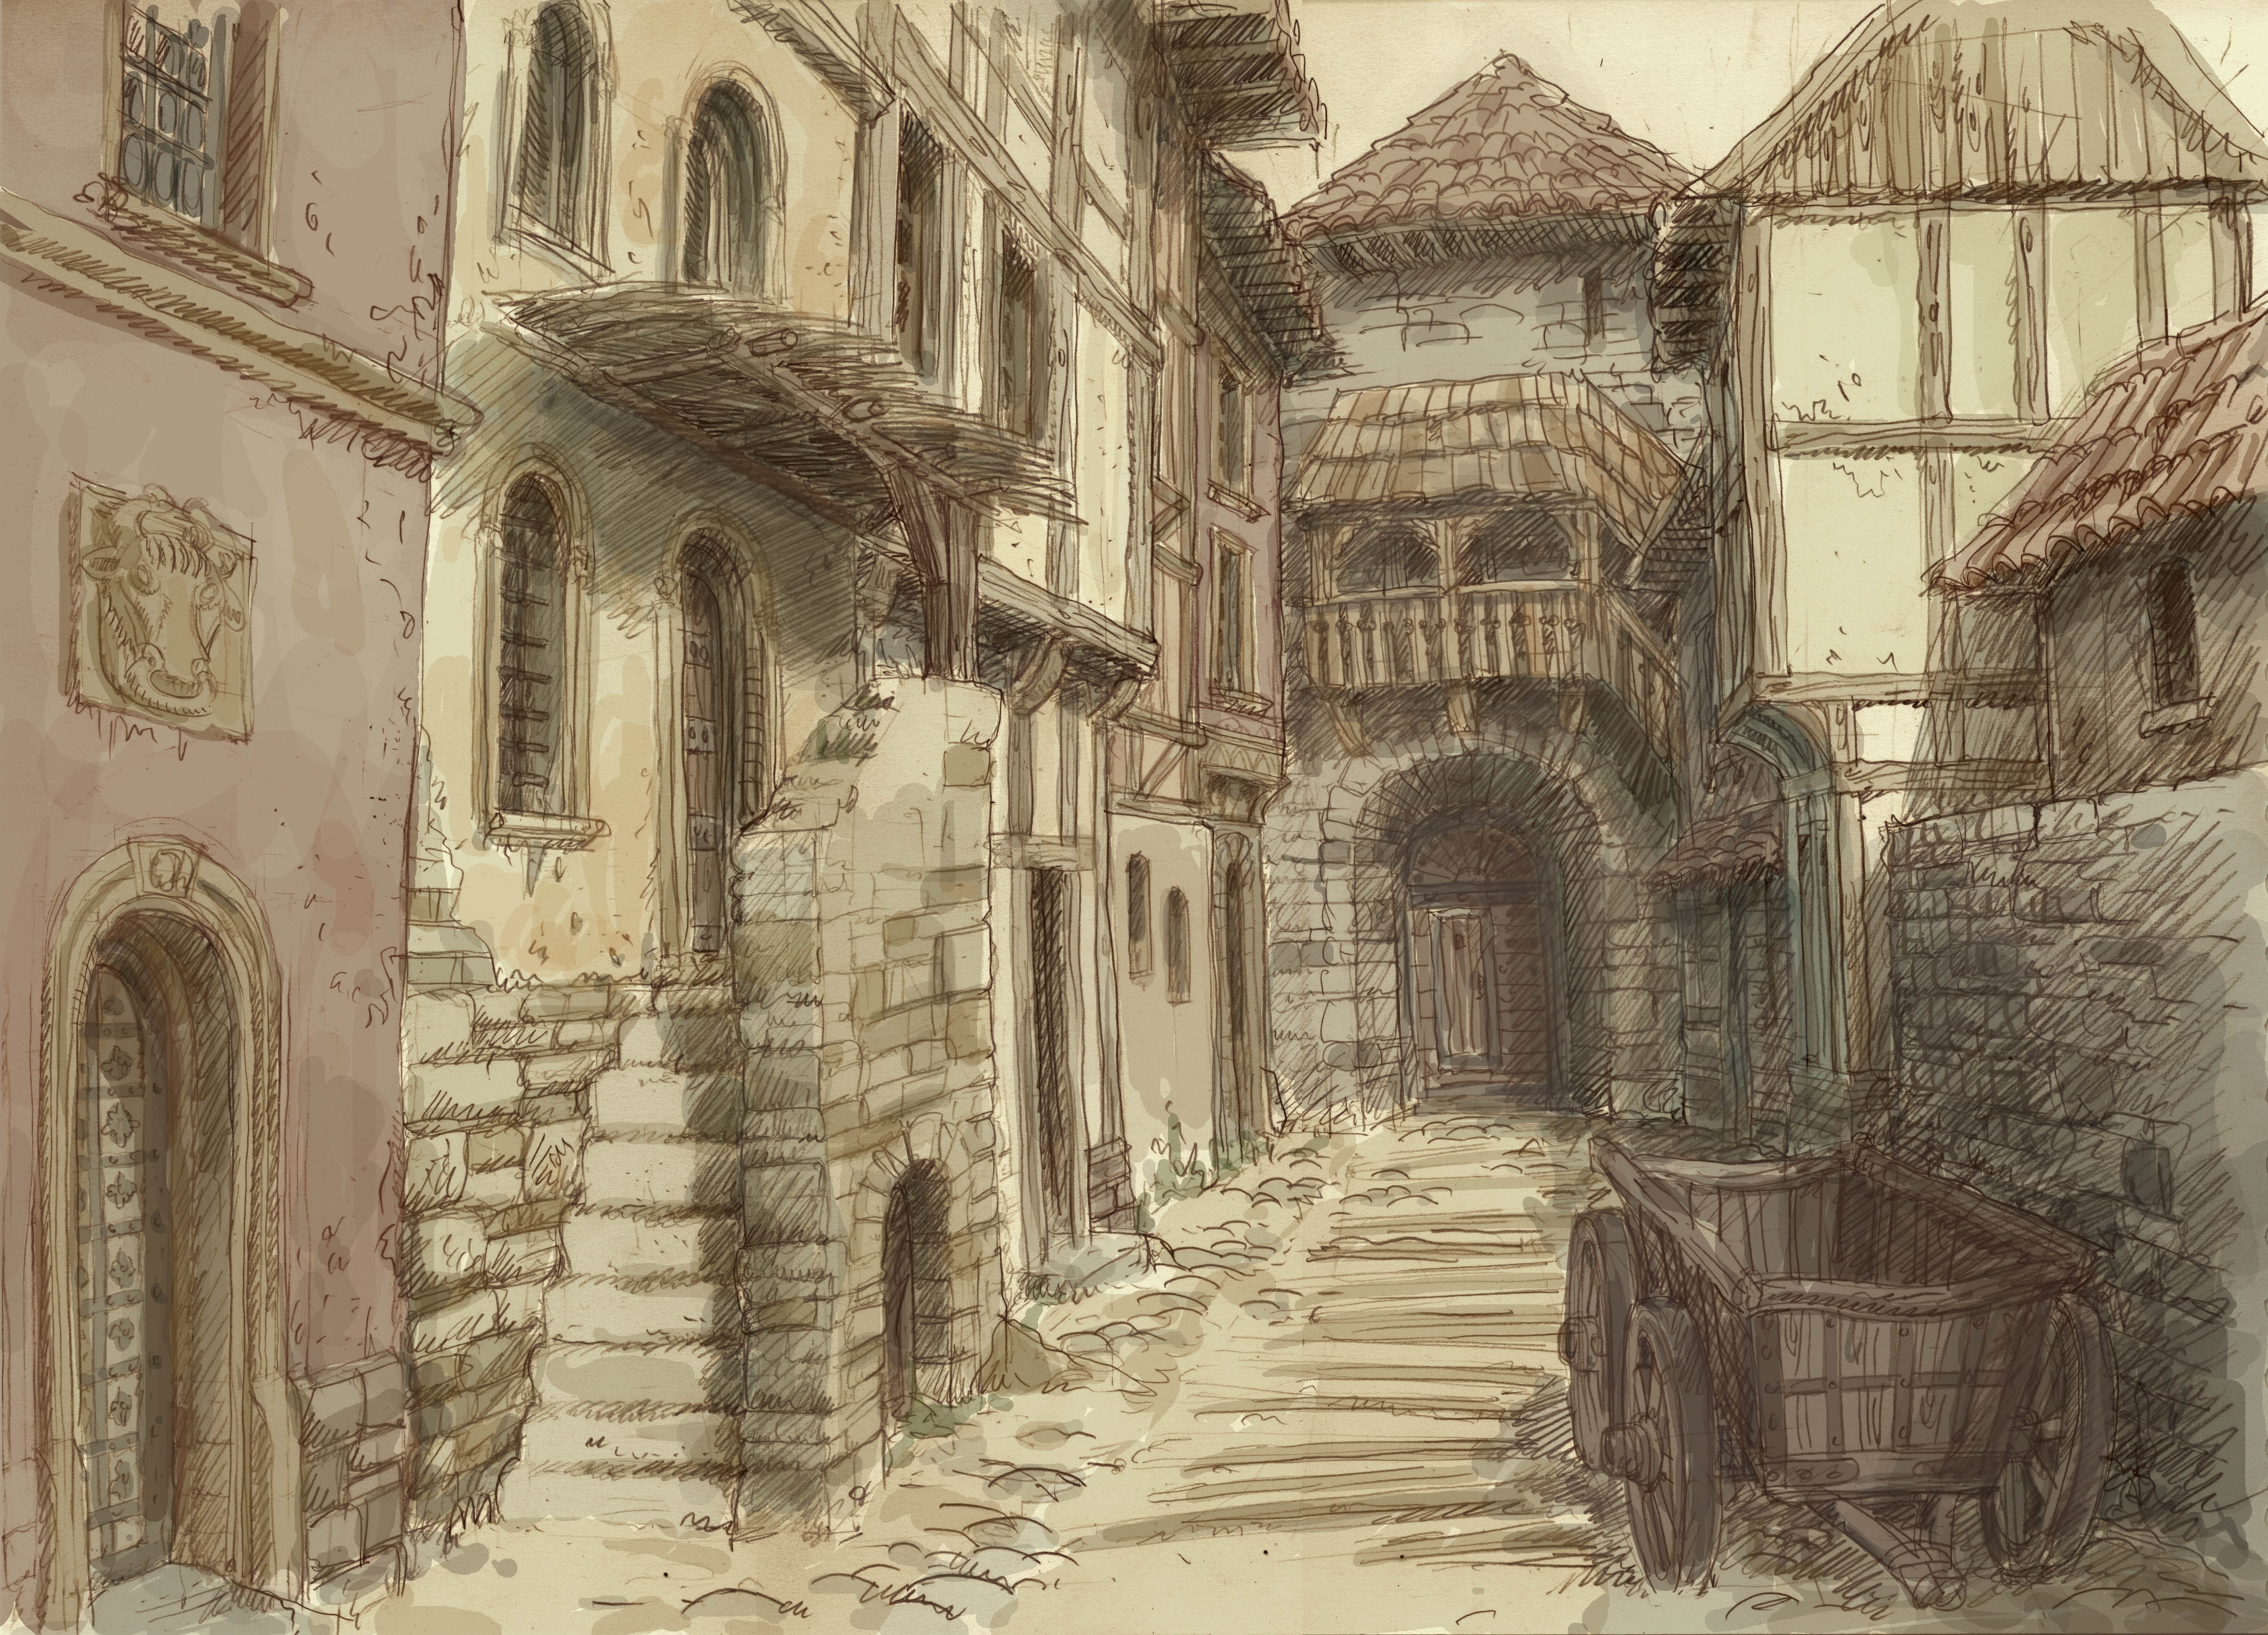 medieval_town_3_by_hetman80-d4m1hk9.jpg